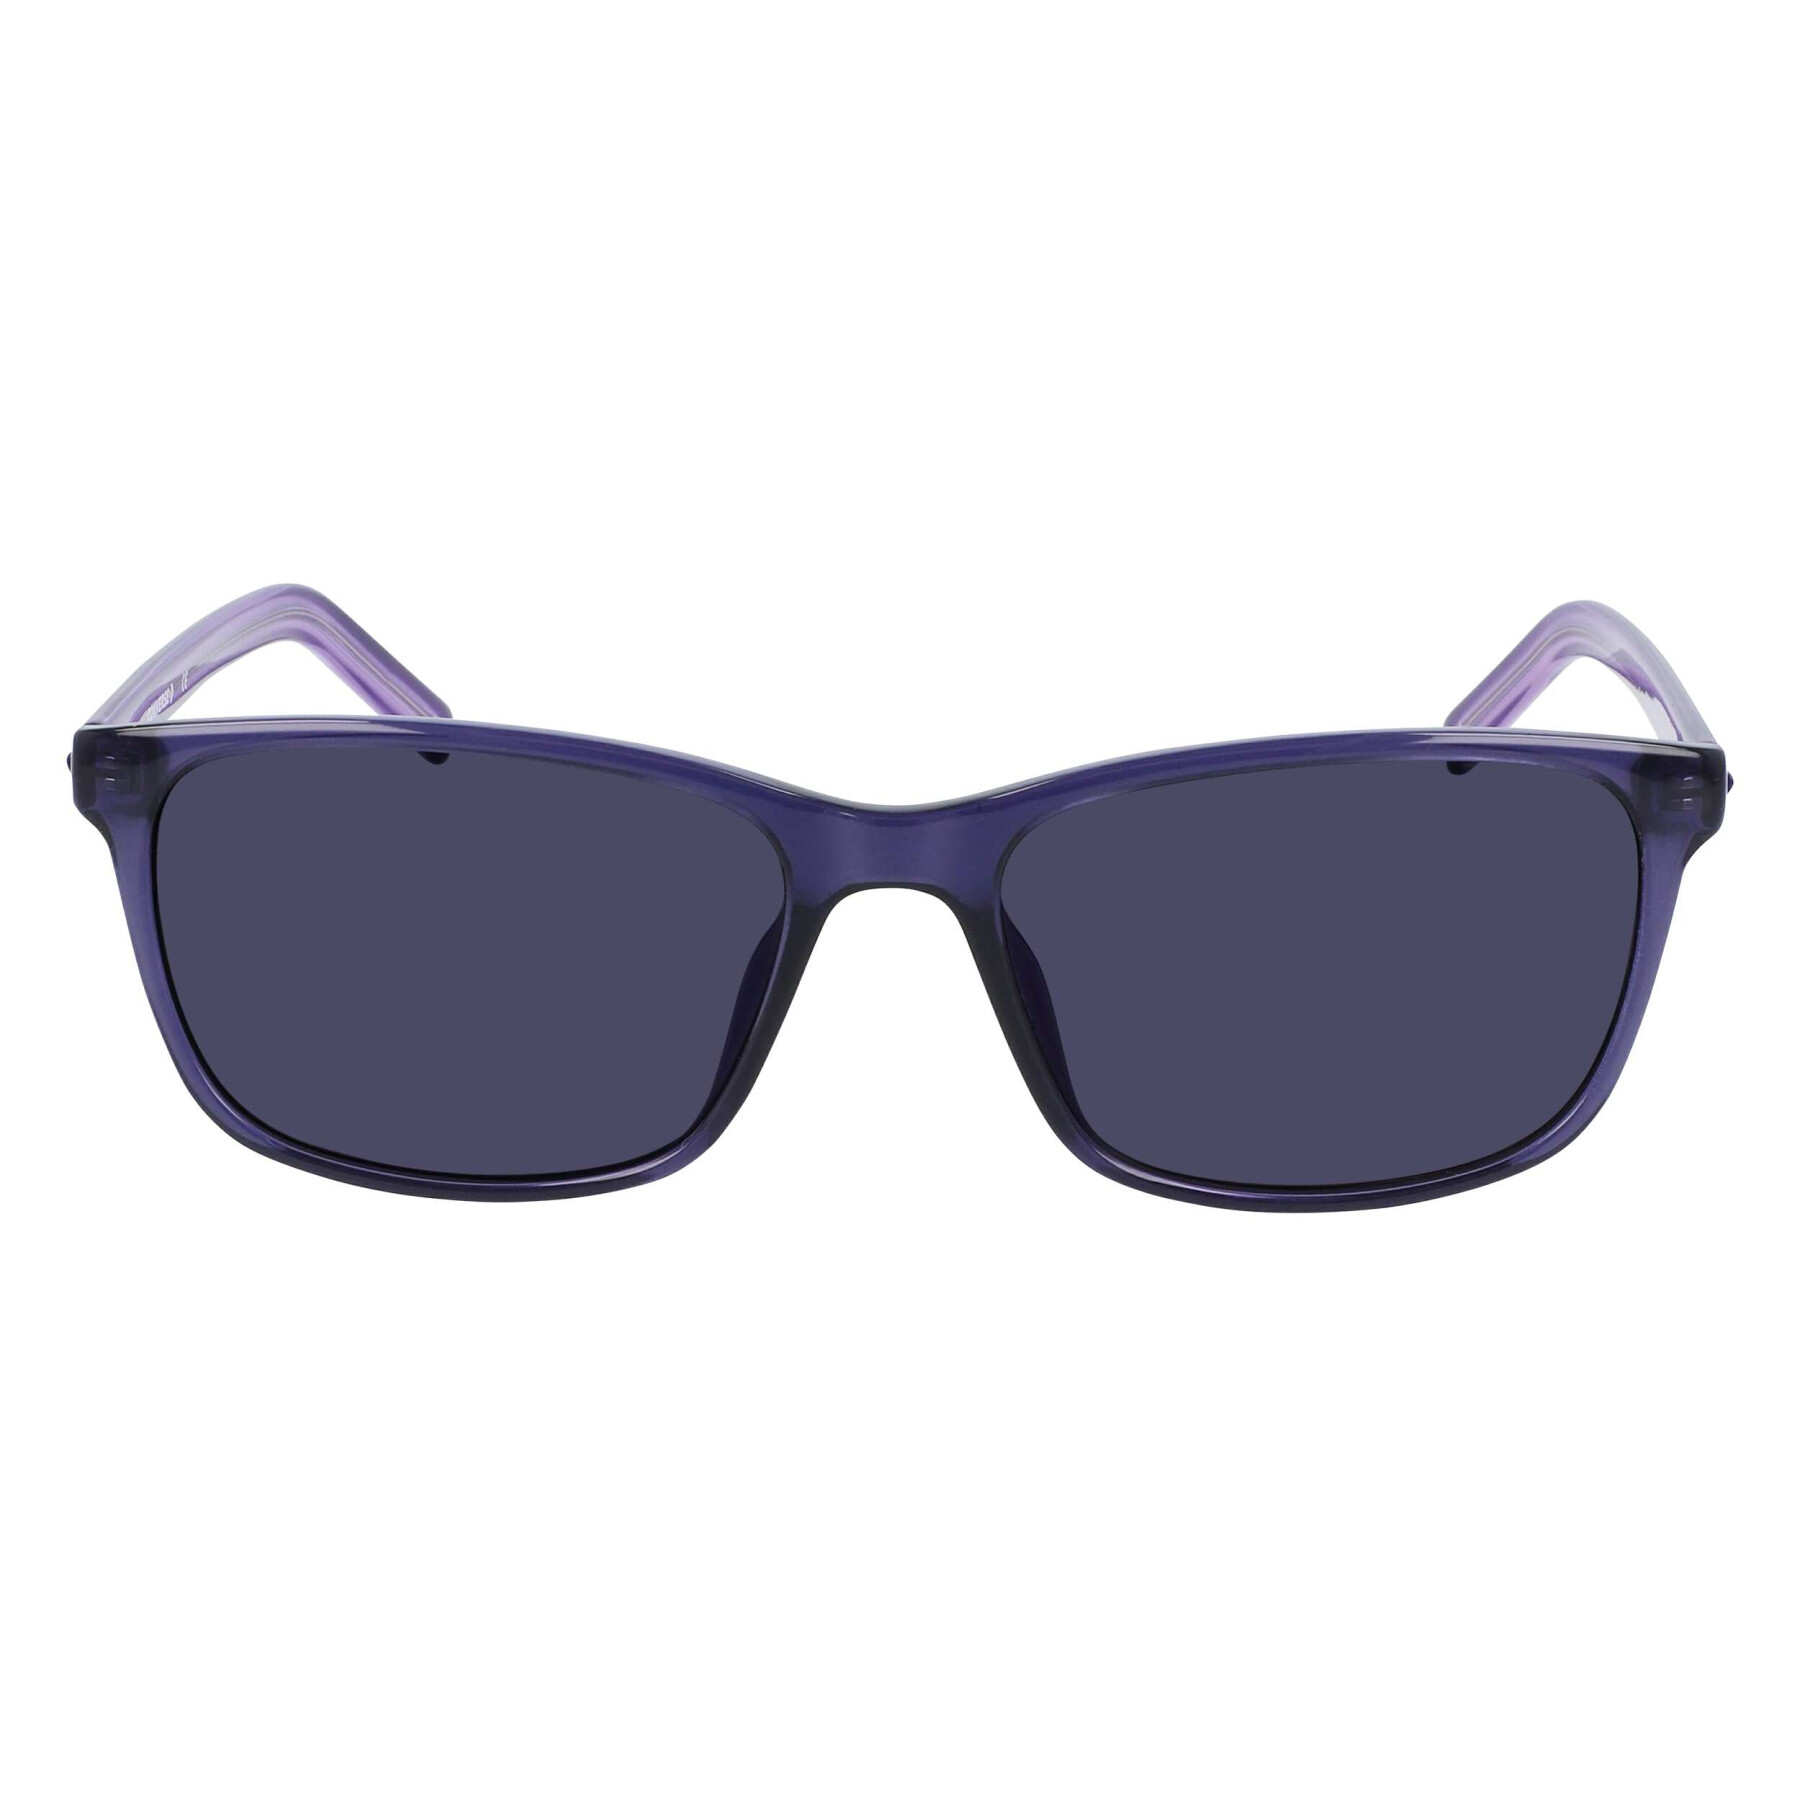 Women's sunglasses Converse CV506SCHUCK51